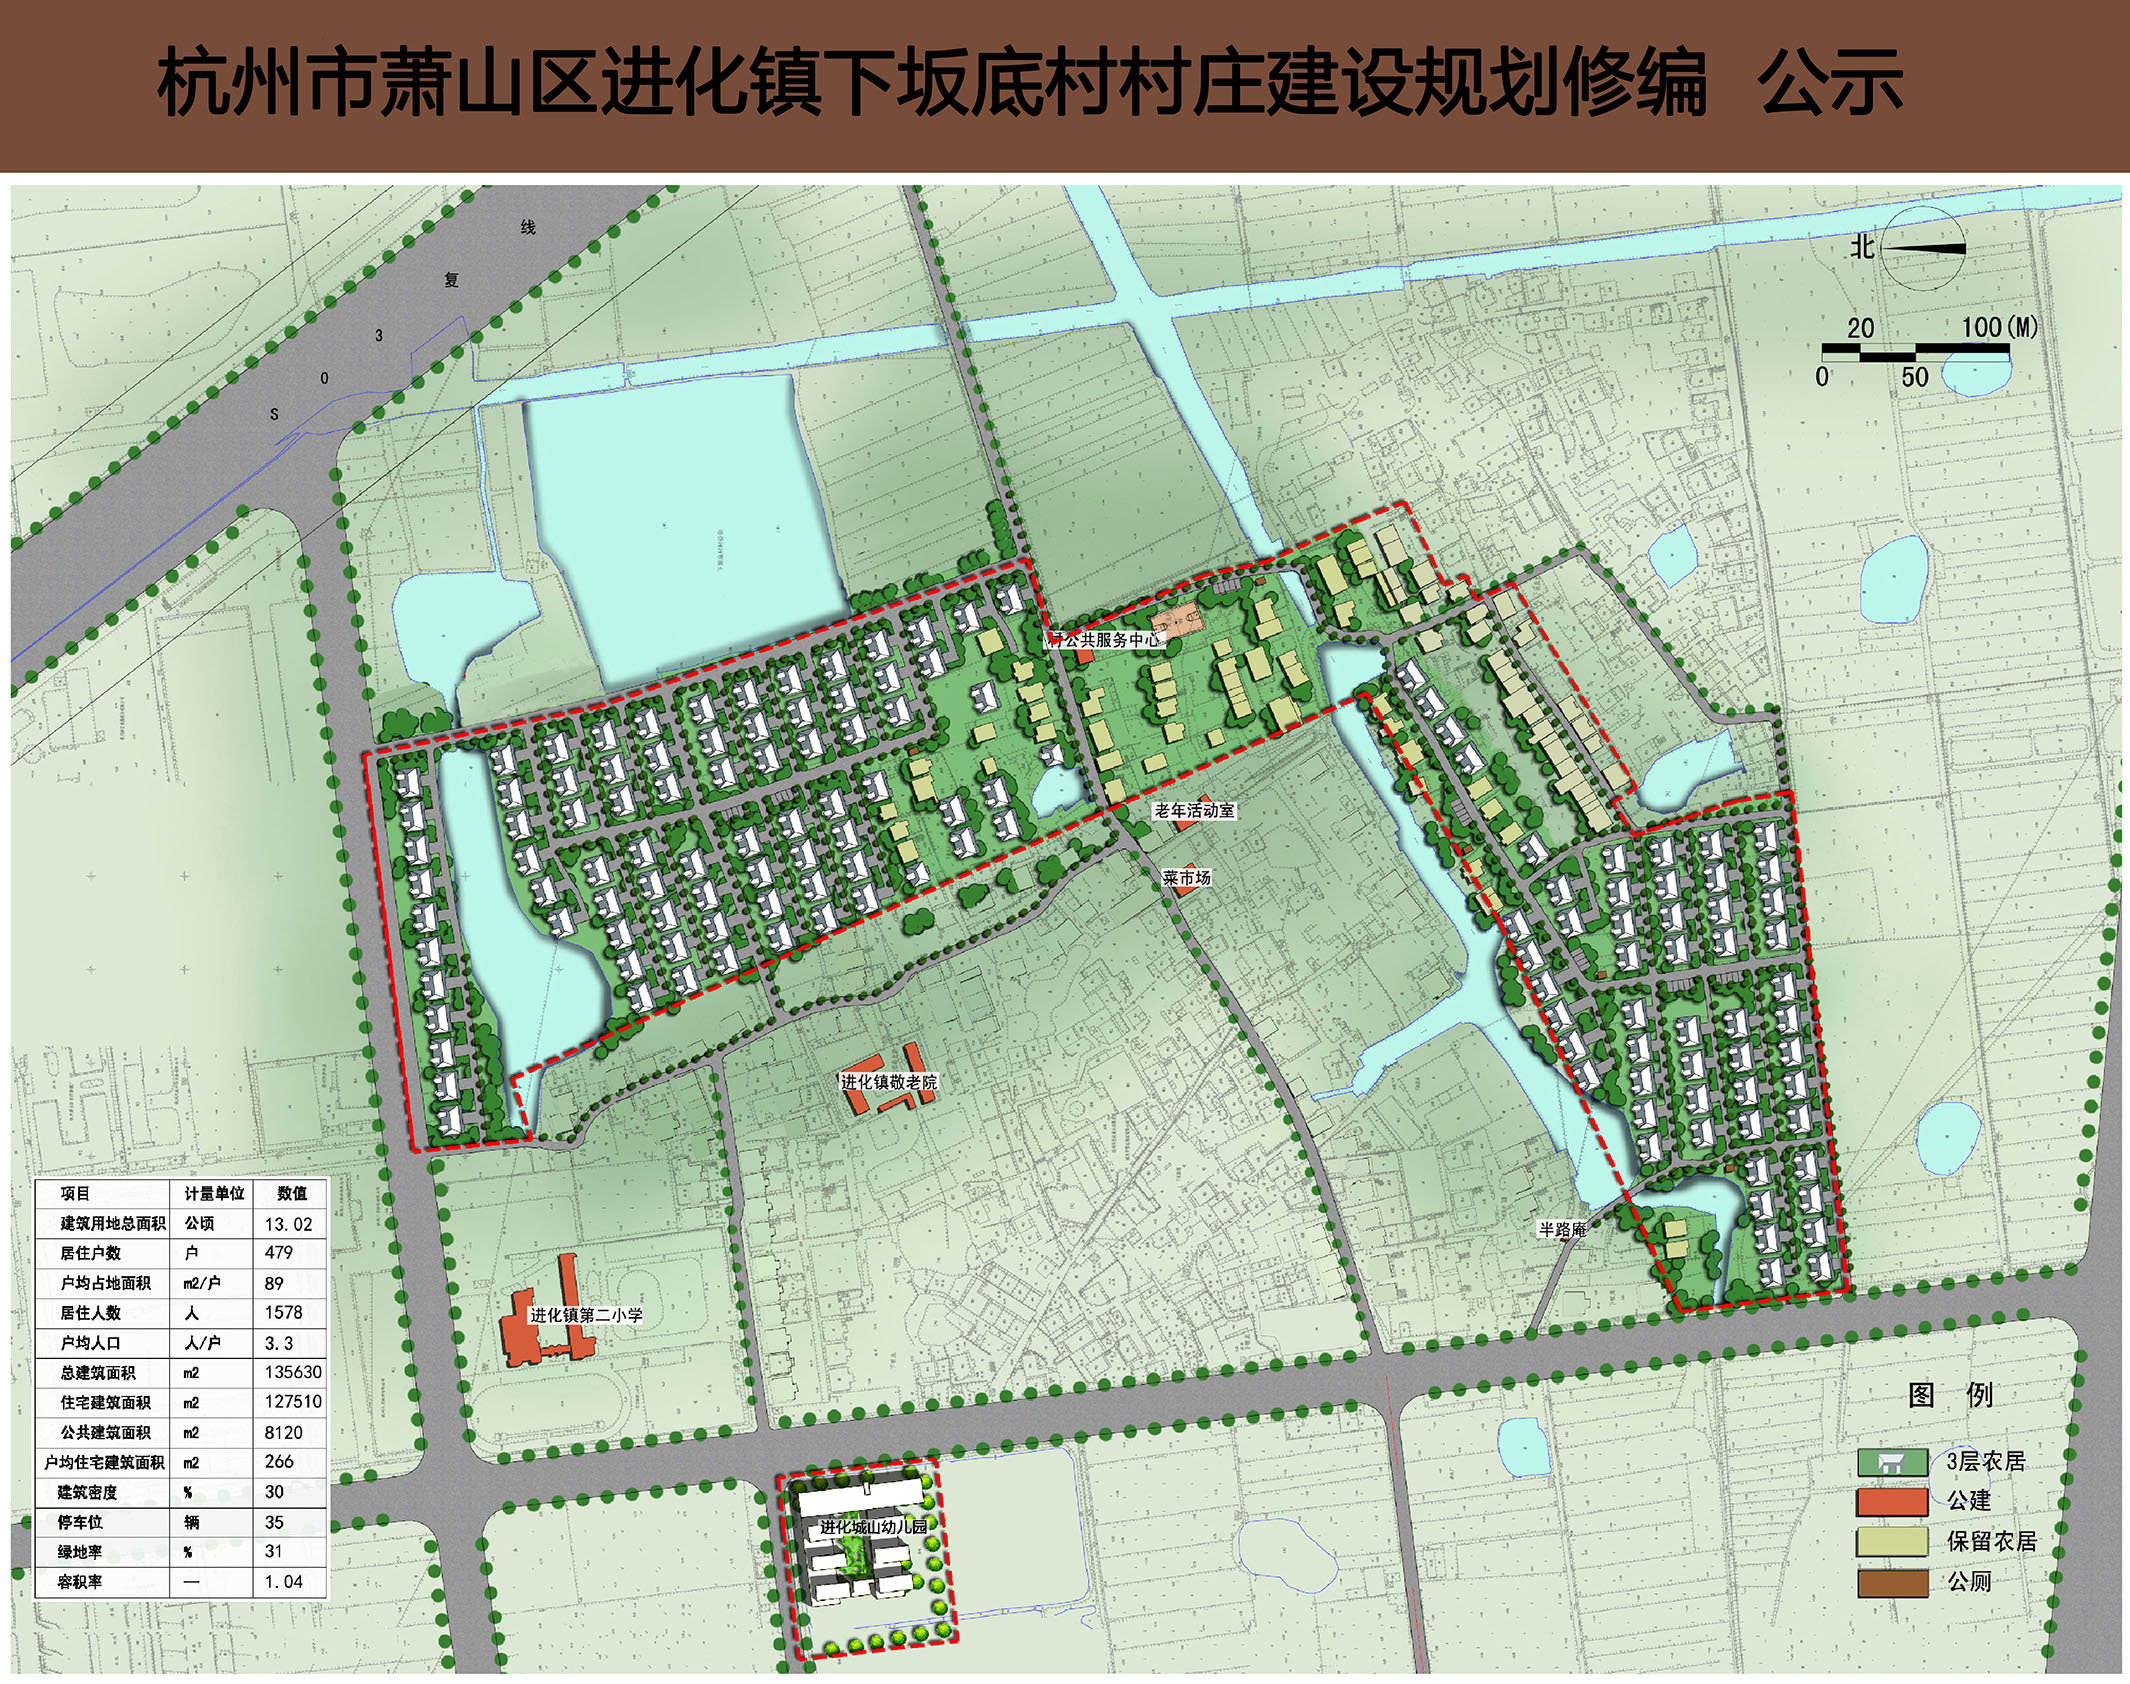 大汤坞新村总平面规划图(点击图片看大图 裘家坞村总平面规划